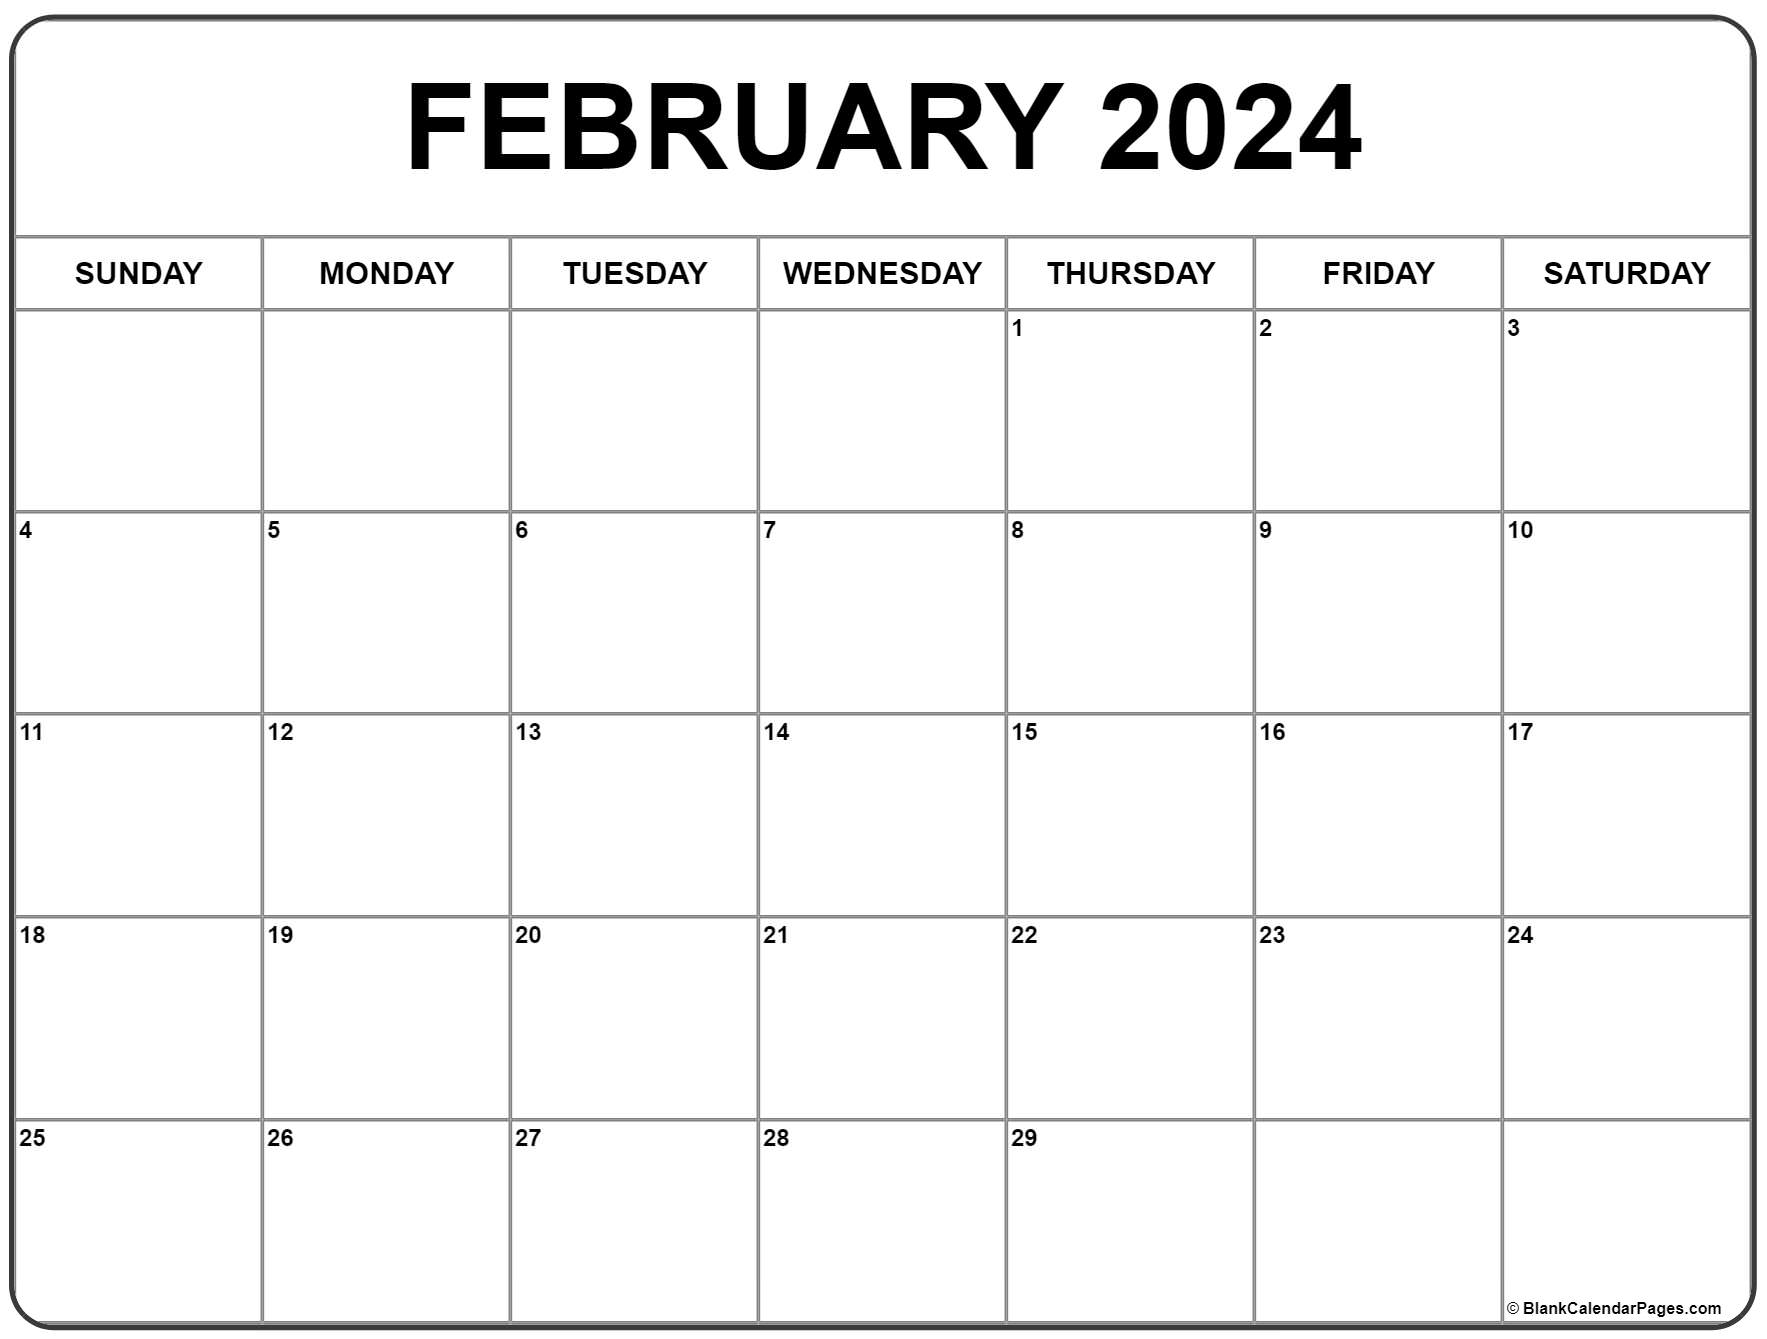 February 2024 Calendar | Free Printable Calendar for Free Printable February 2024 Calendar